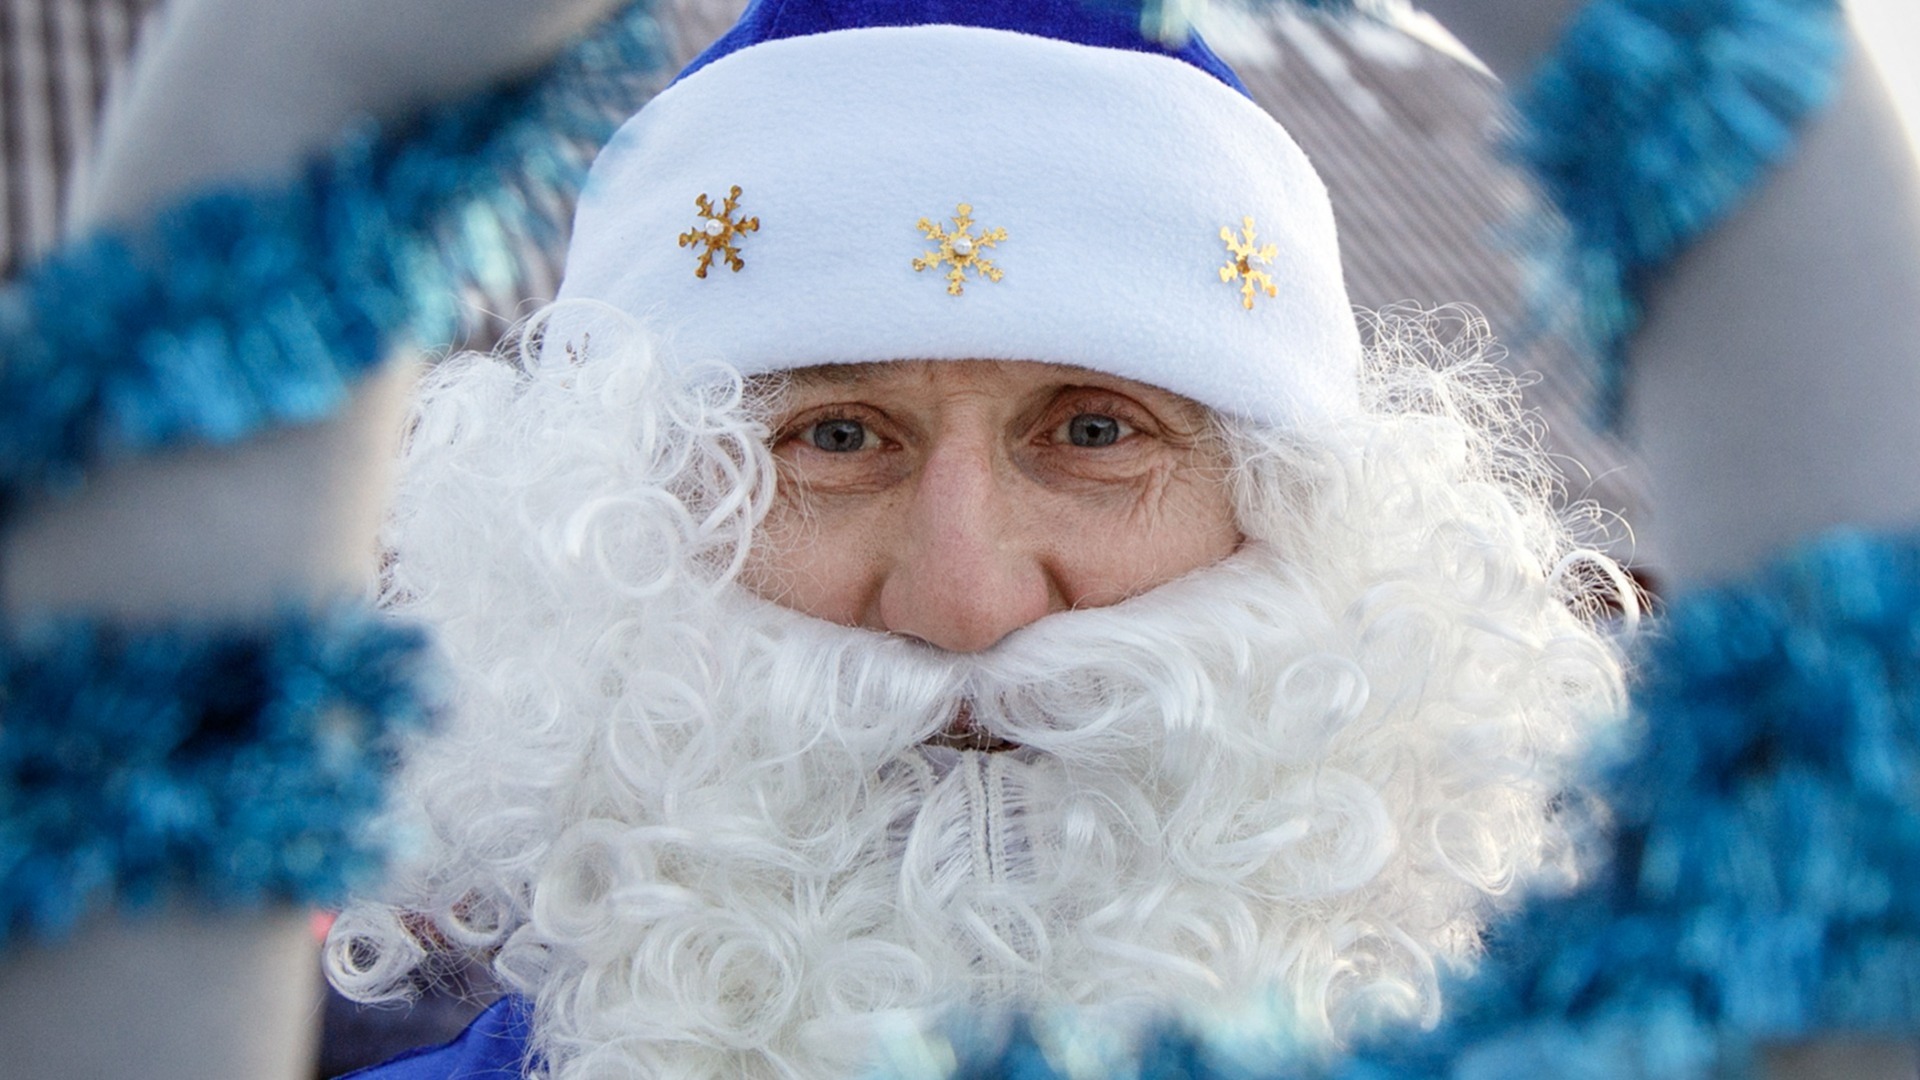 Жители Ростова-на-Дону заметили Деда Мороза на самокате 18 июня